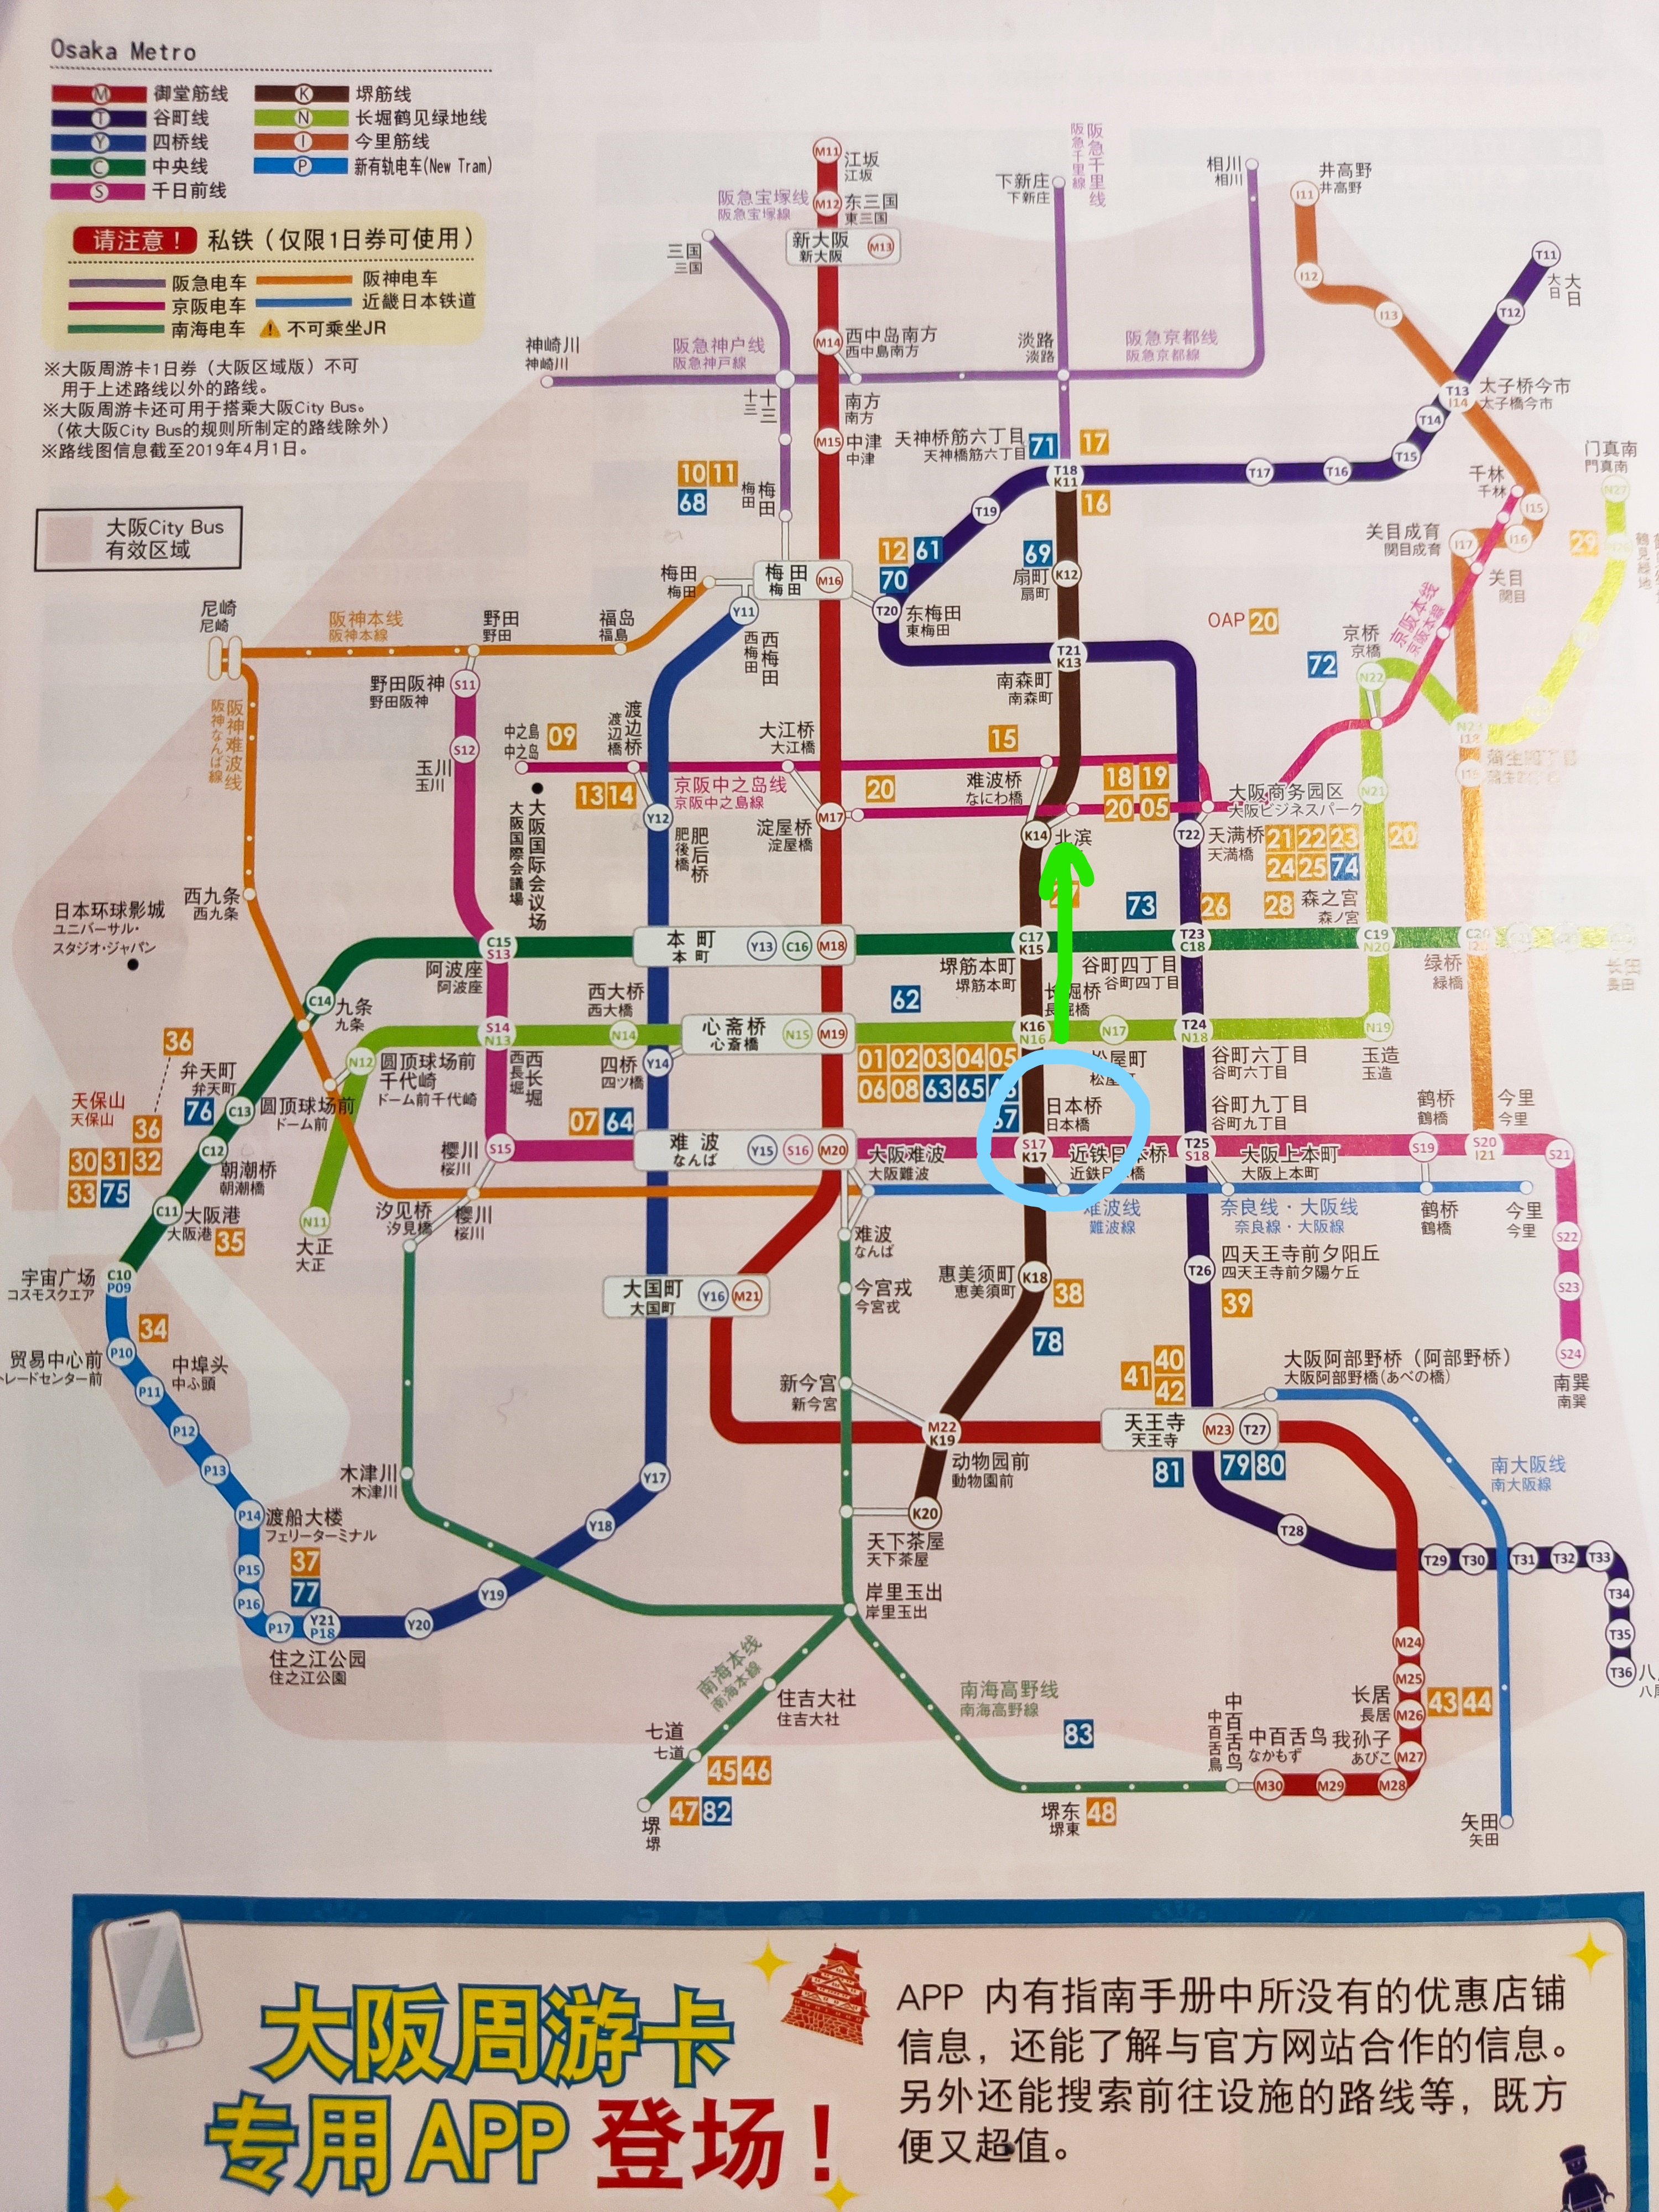 大阪市内地铁线路图